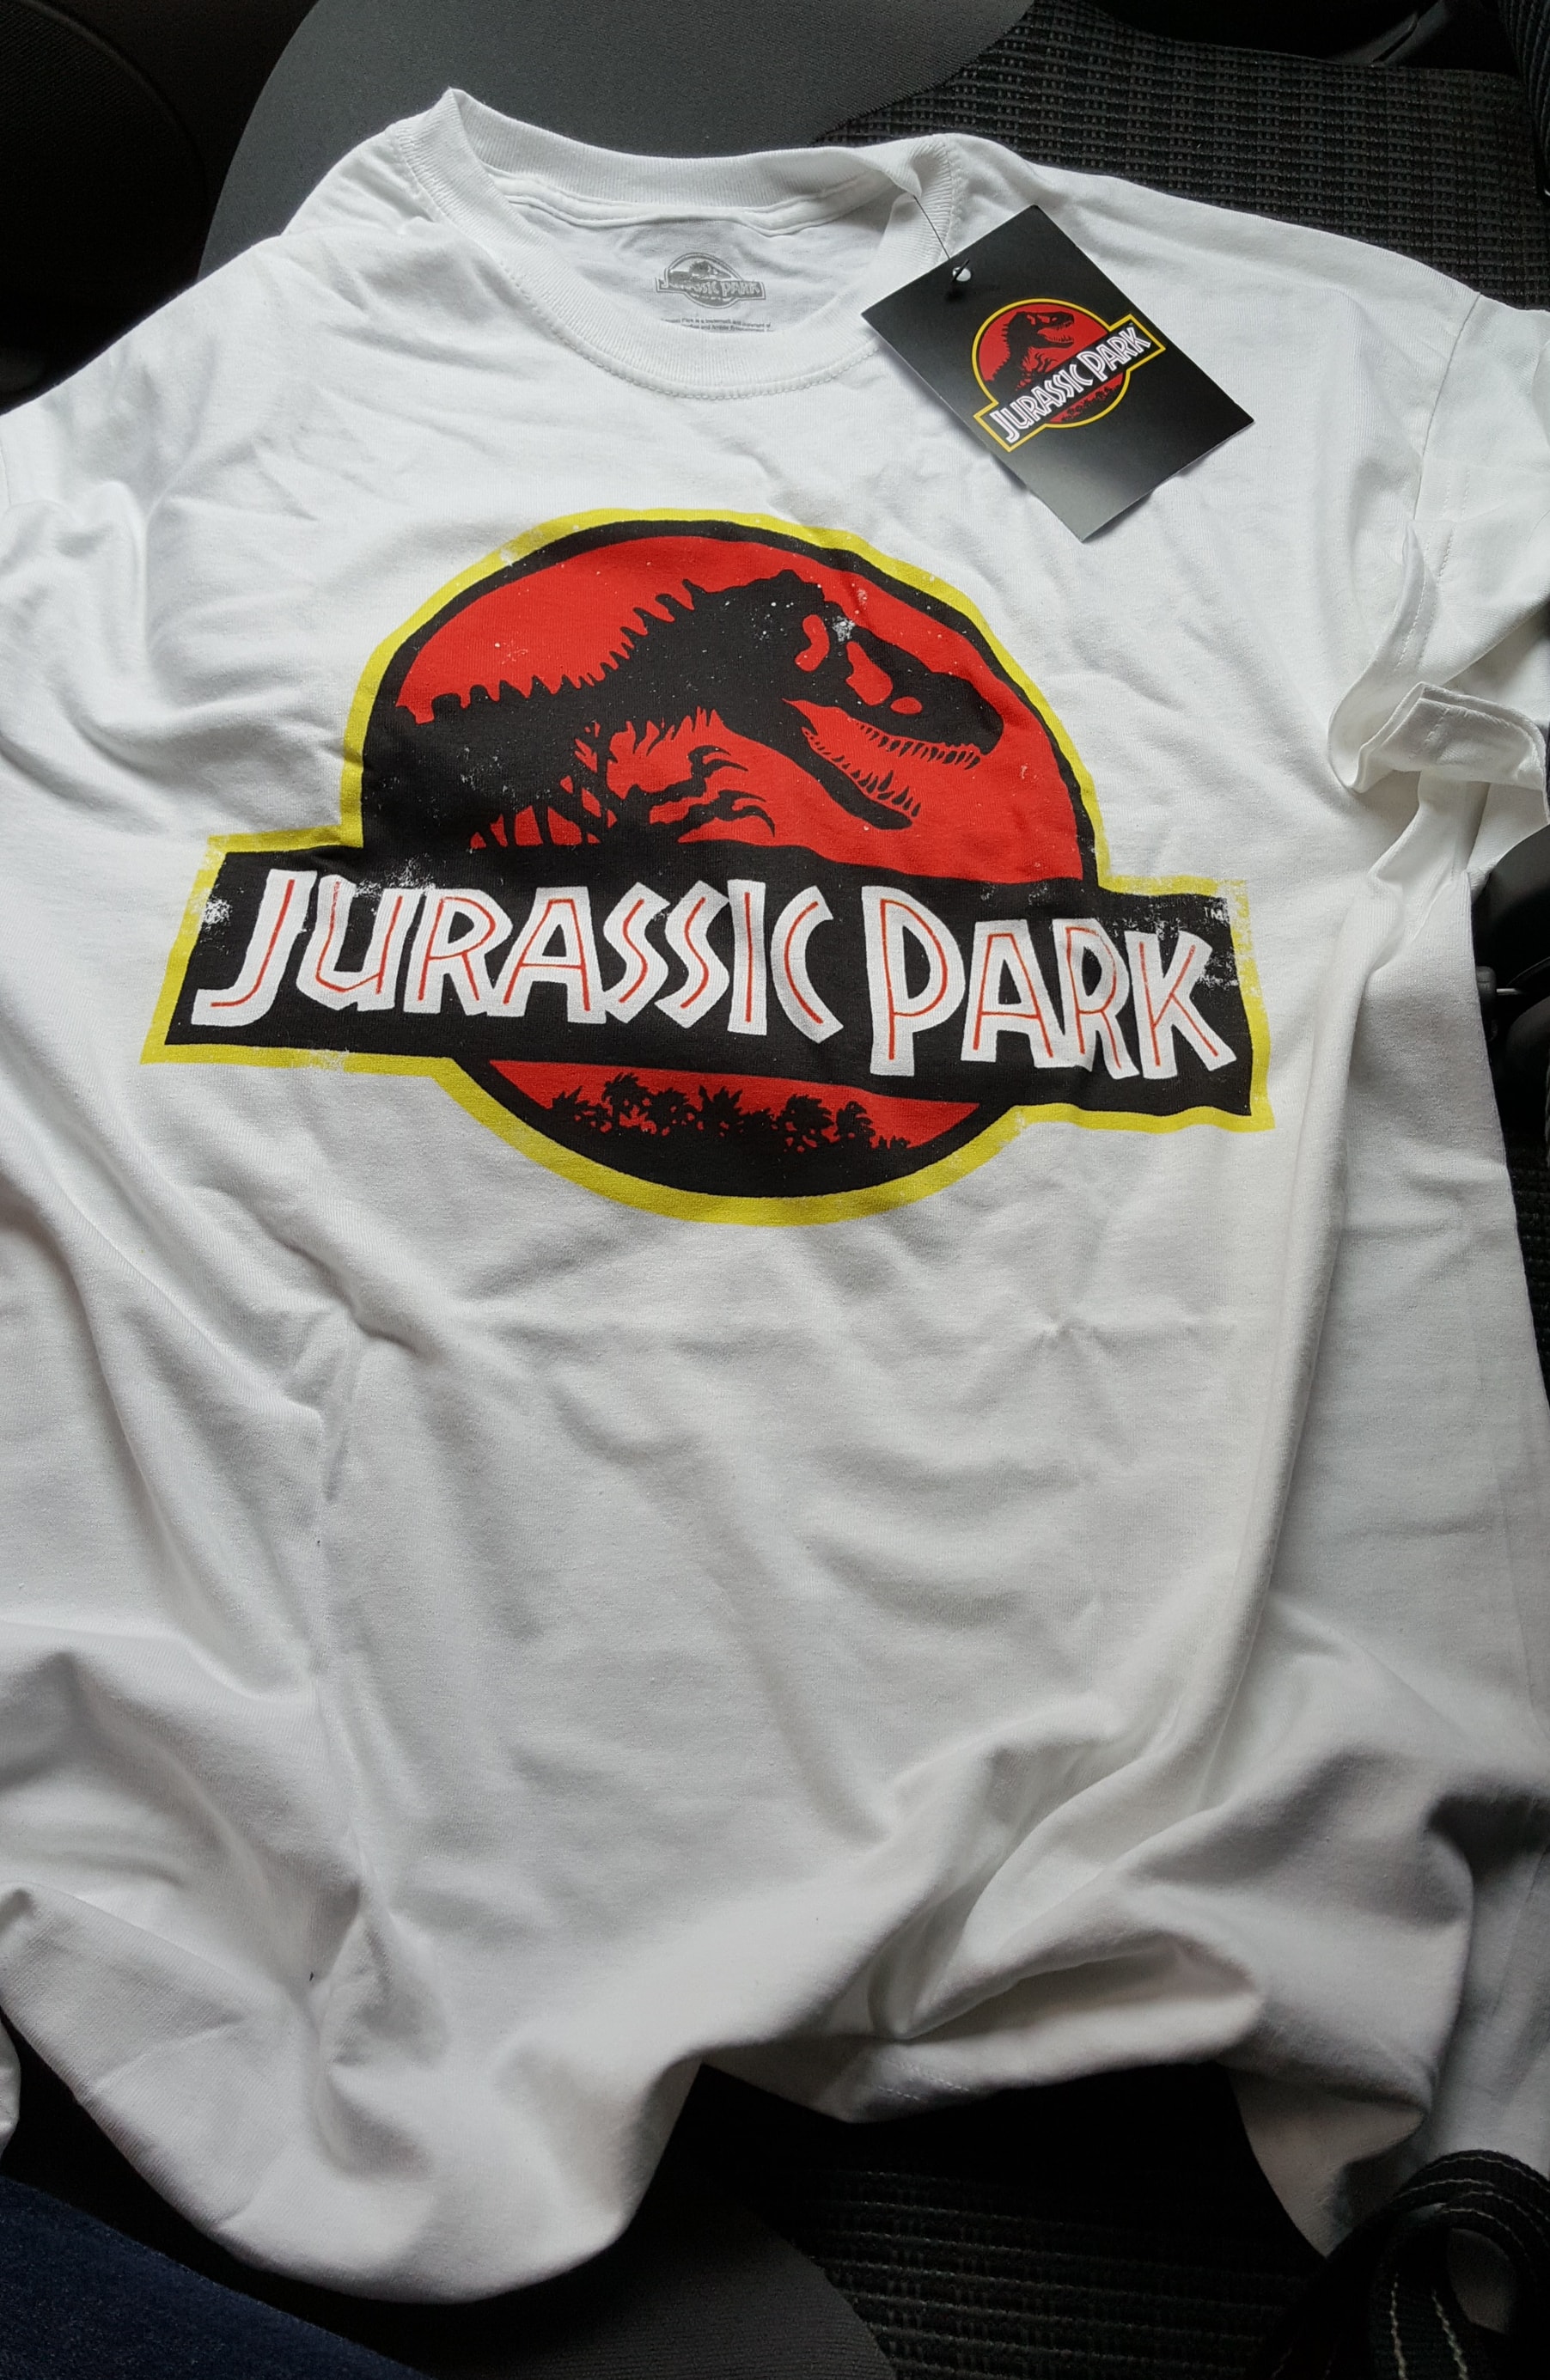 promesa Fotoeléctrico Tendero Camiseta de Jurassic Park en Primark por 7 euros: Mi Compra 10-04-2018